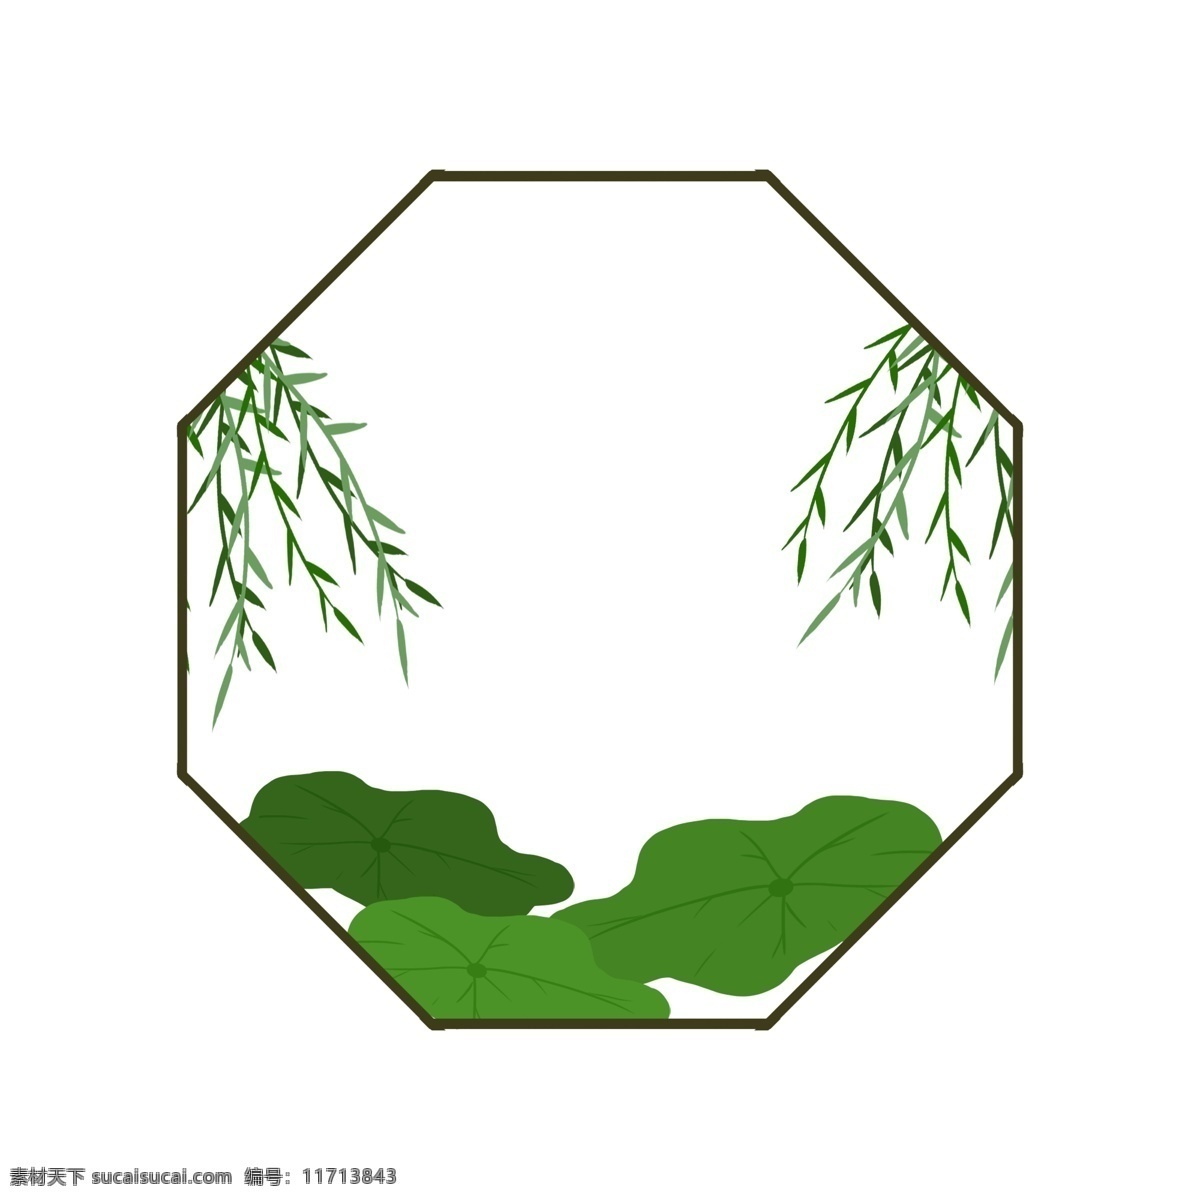 传统 风格 柳树 木质 边框 荷叶 大荷叶 绿色的 柳叶 绿色的柳叶 叶子 装饰风格 插画风格 手绘 插画